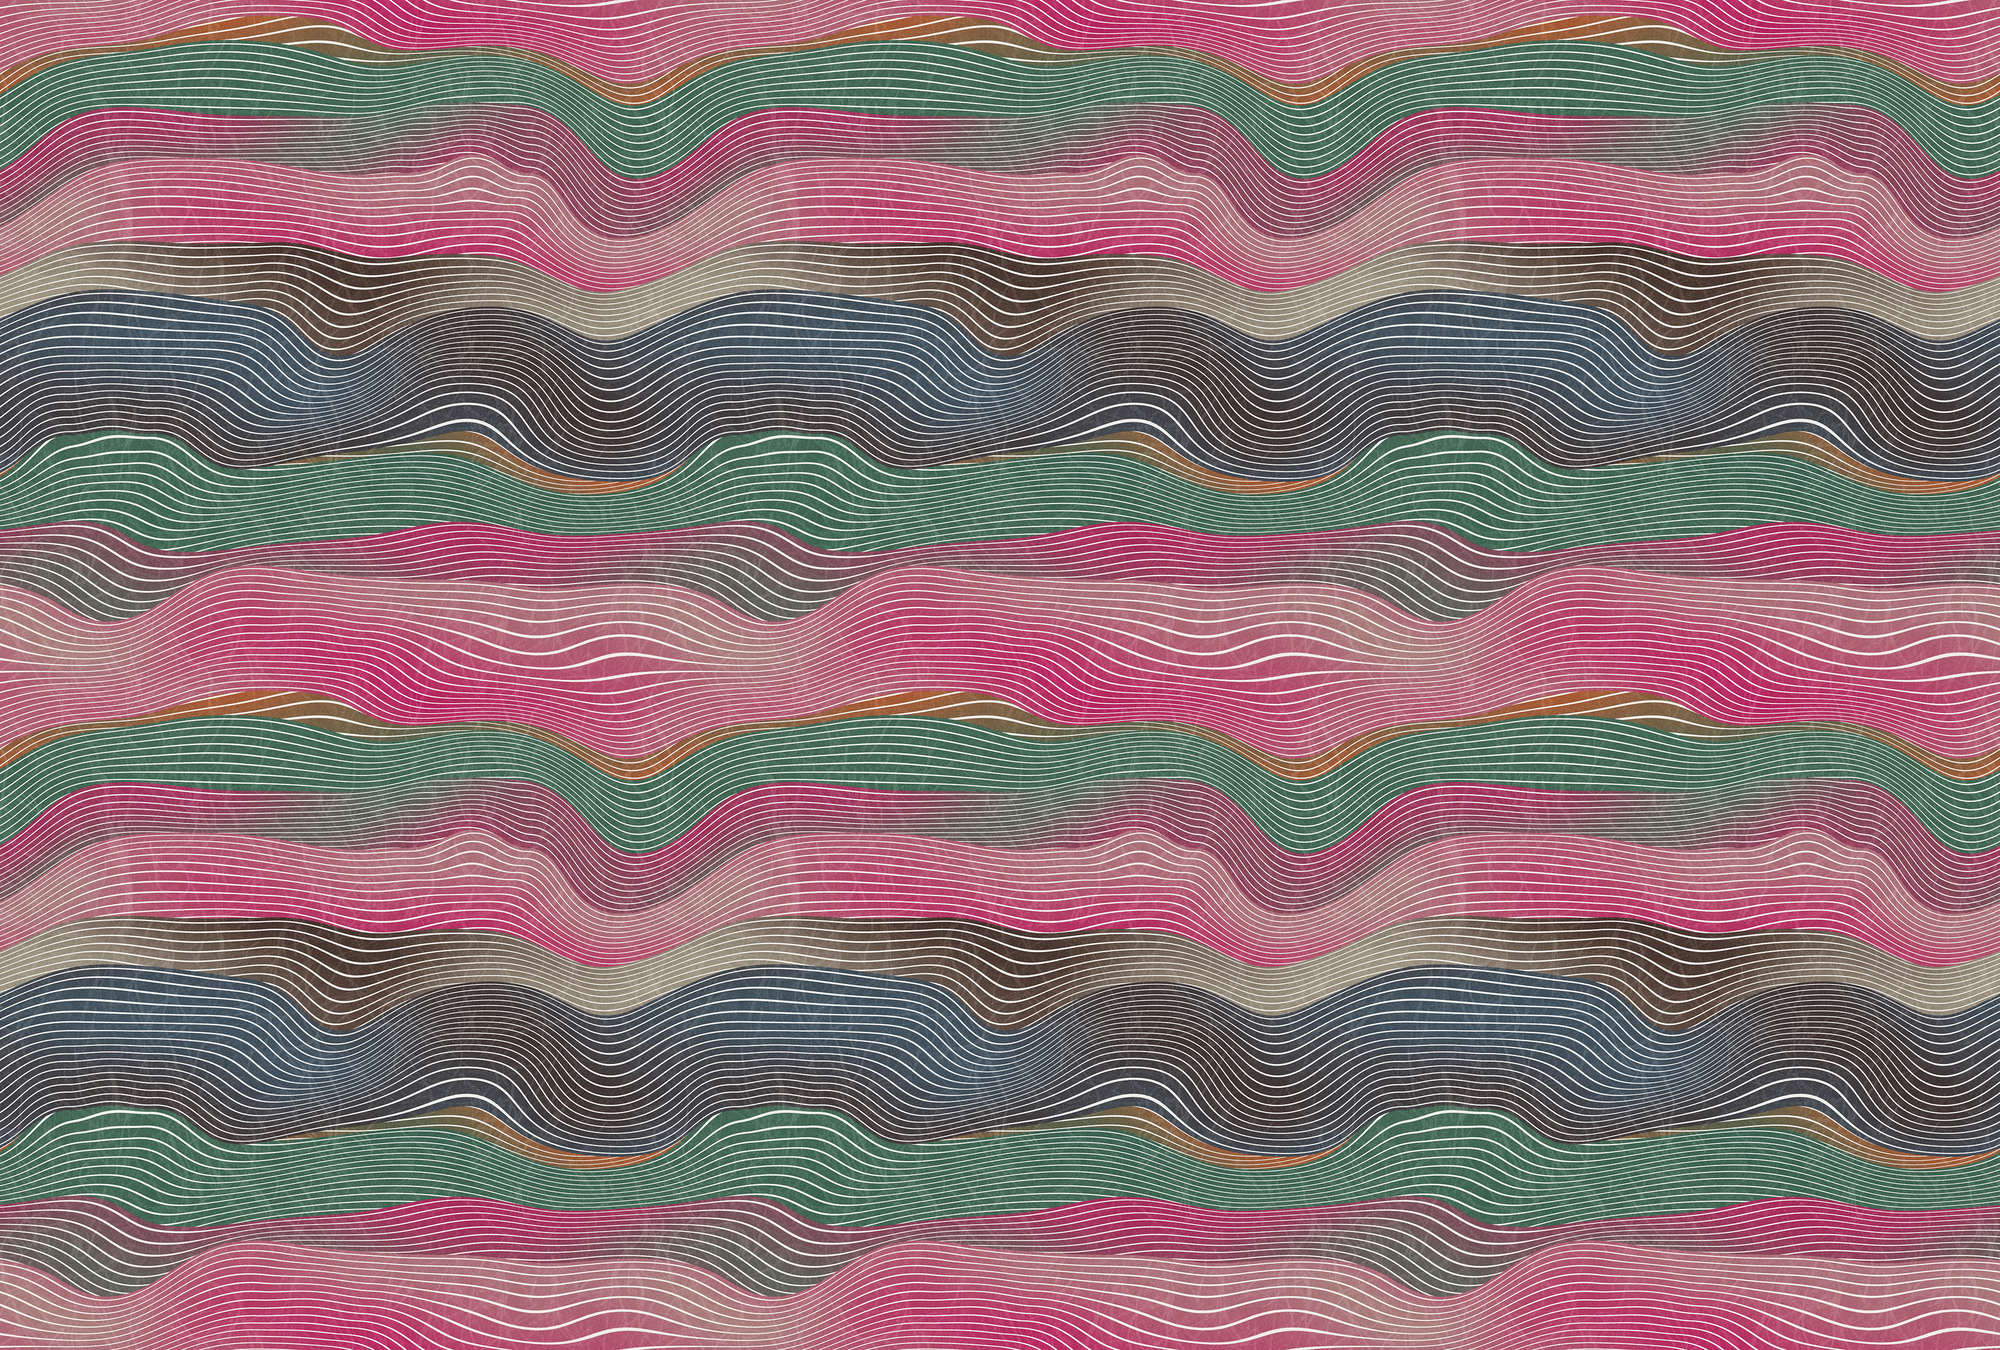             Ruimte 1 - Muurschildering Golven Patroon Roze & Groen Retro Stijl
        